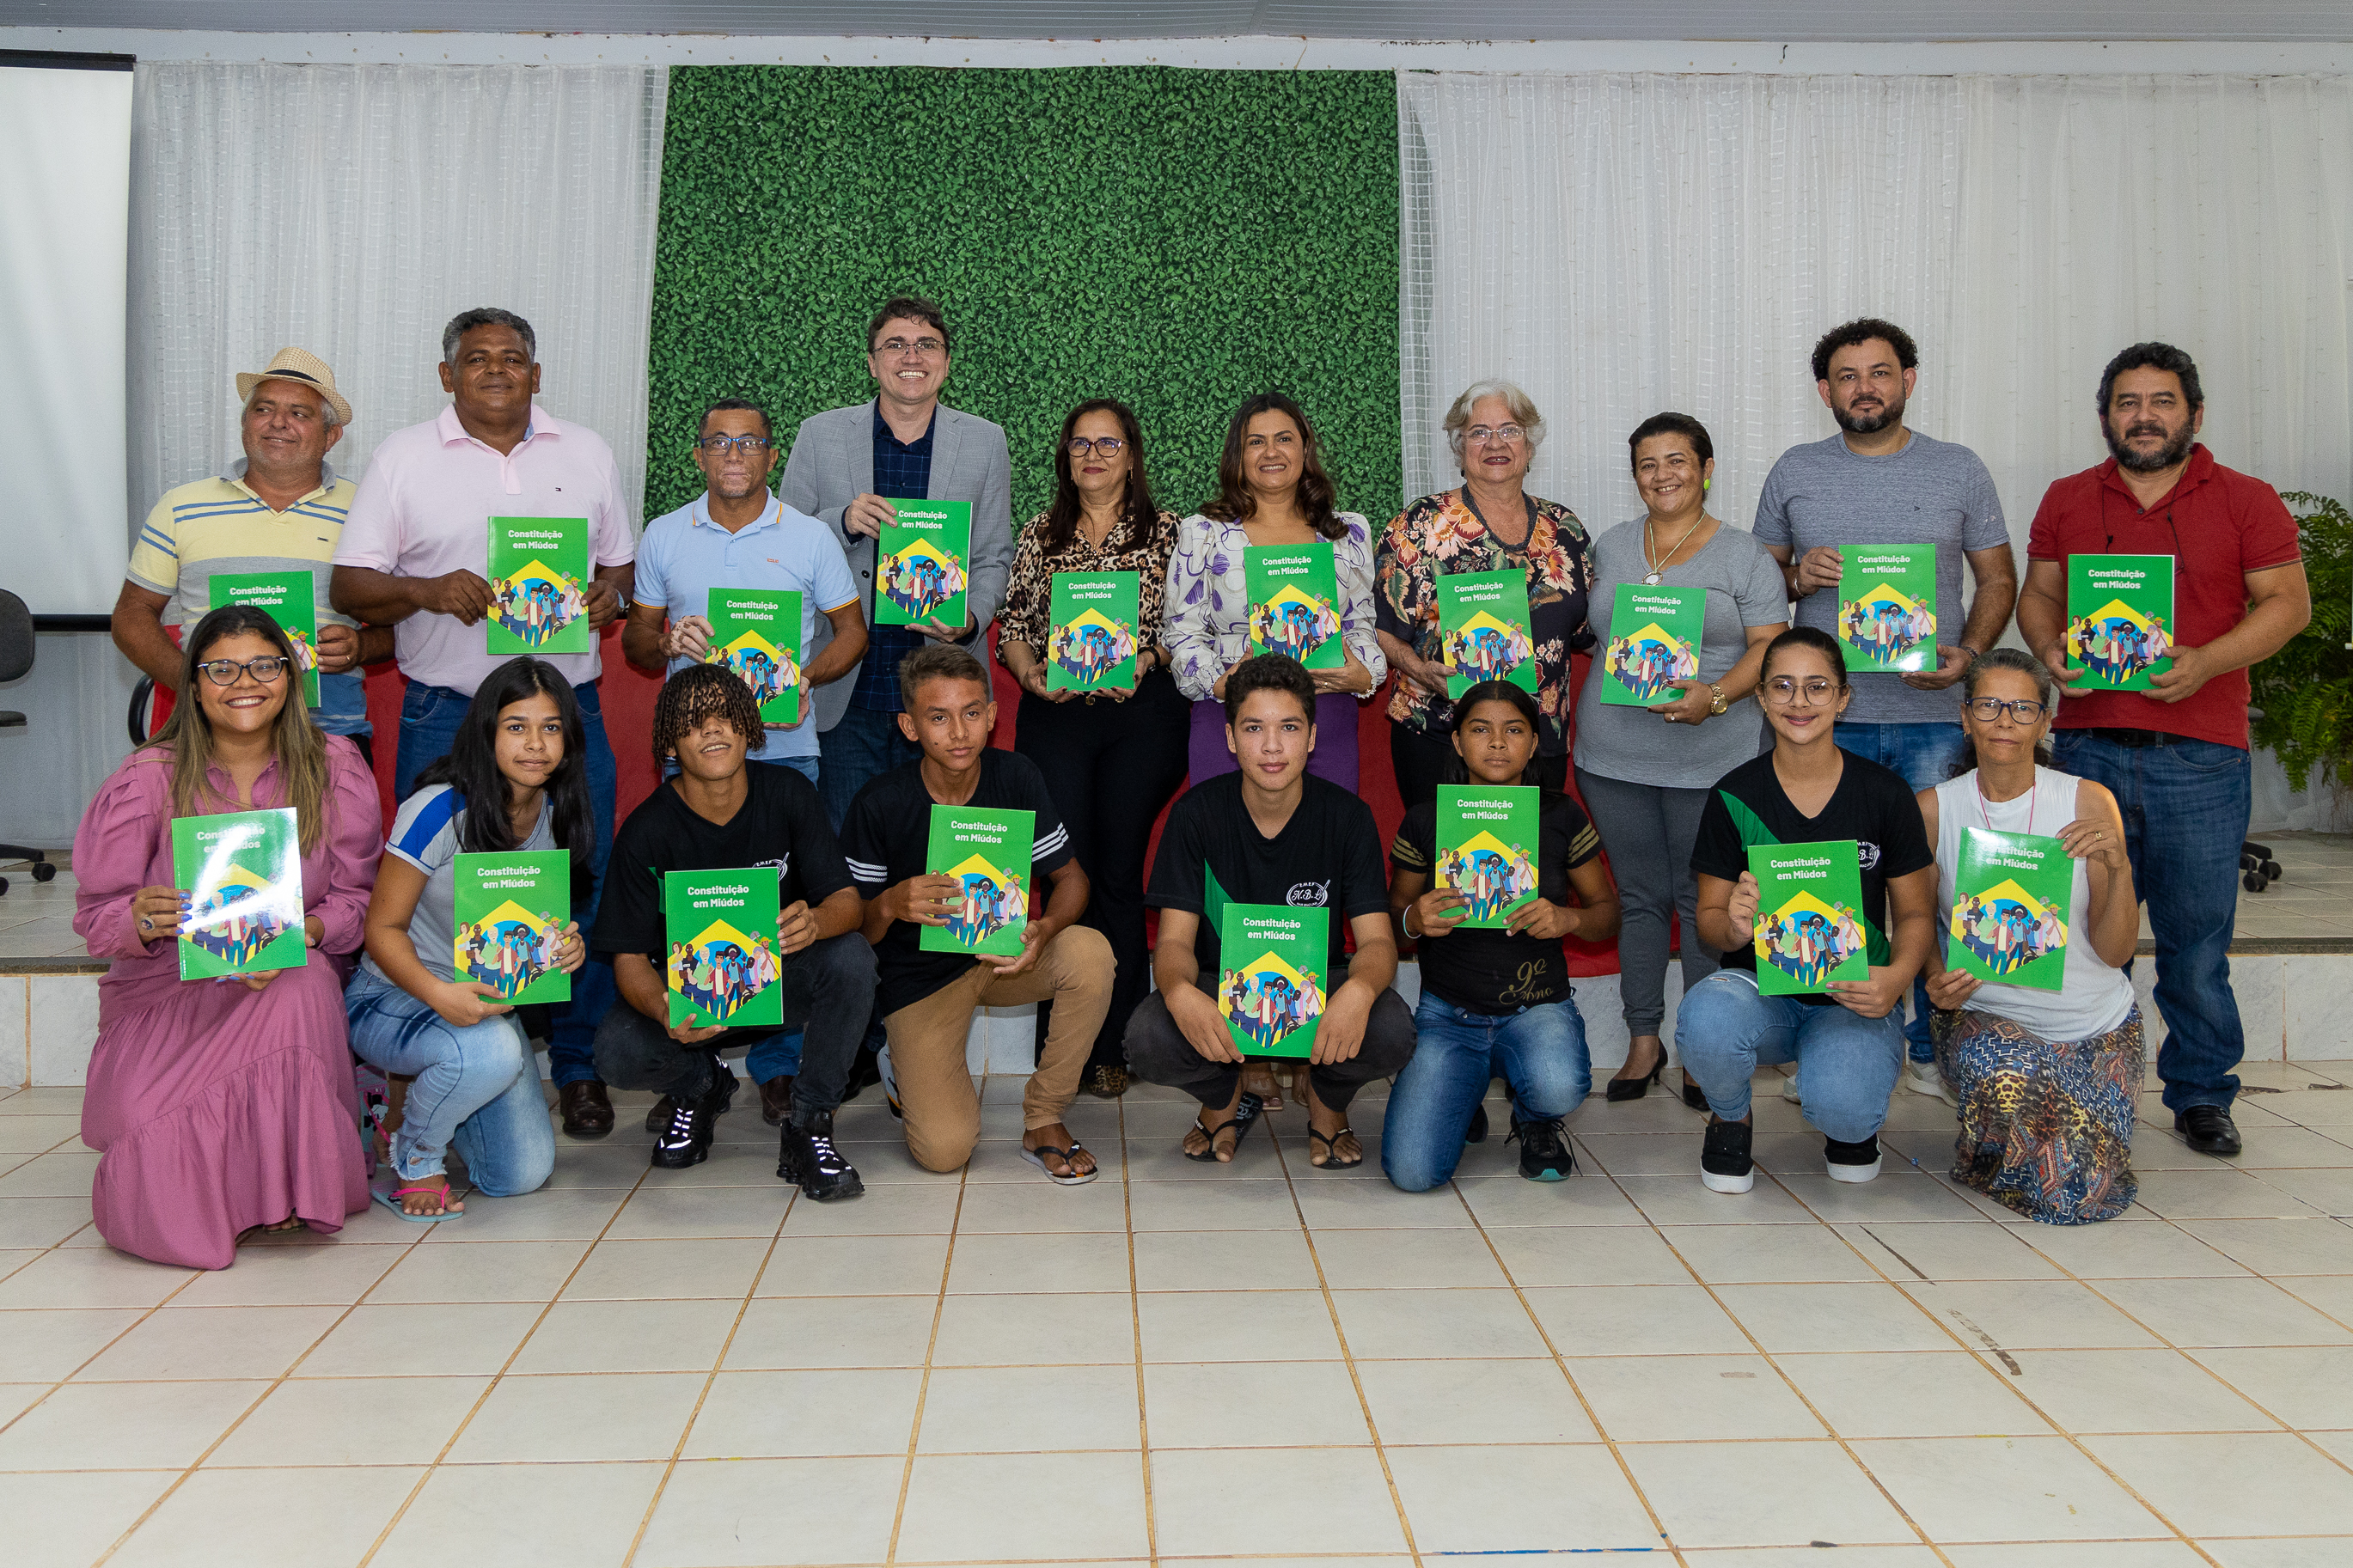 Câmara de Marabá prestigia lançamento da Escola do Legislativo em Nova Ipixuna